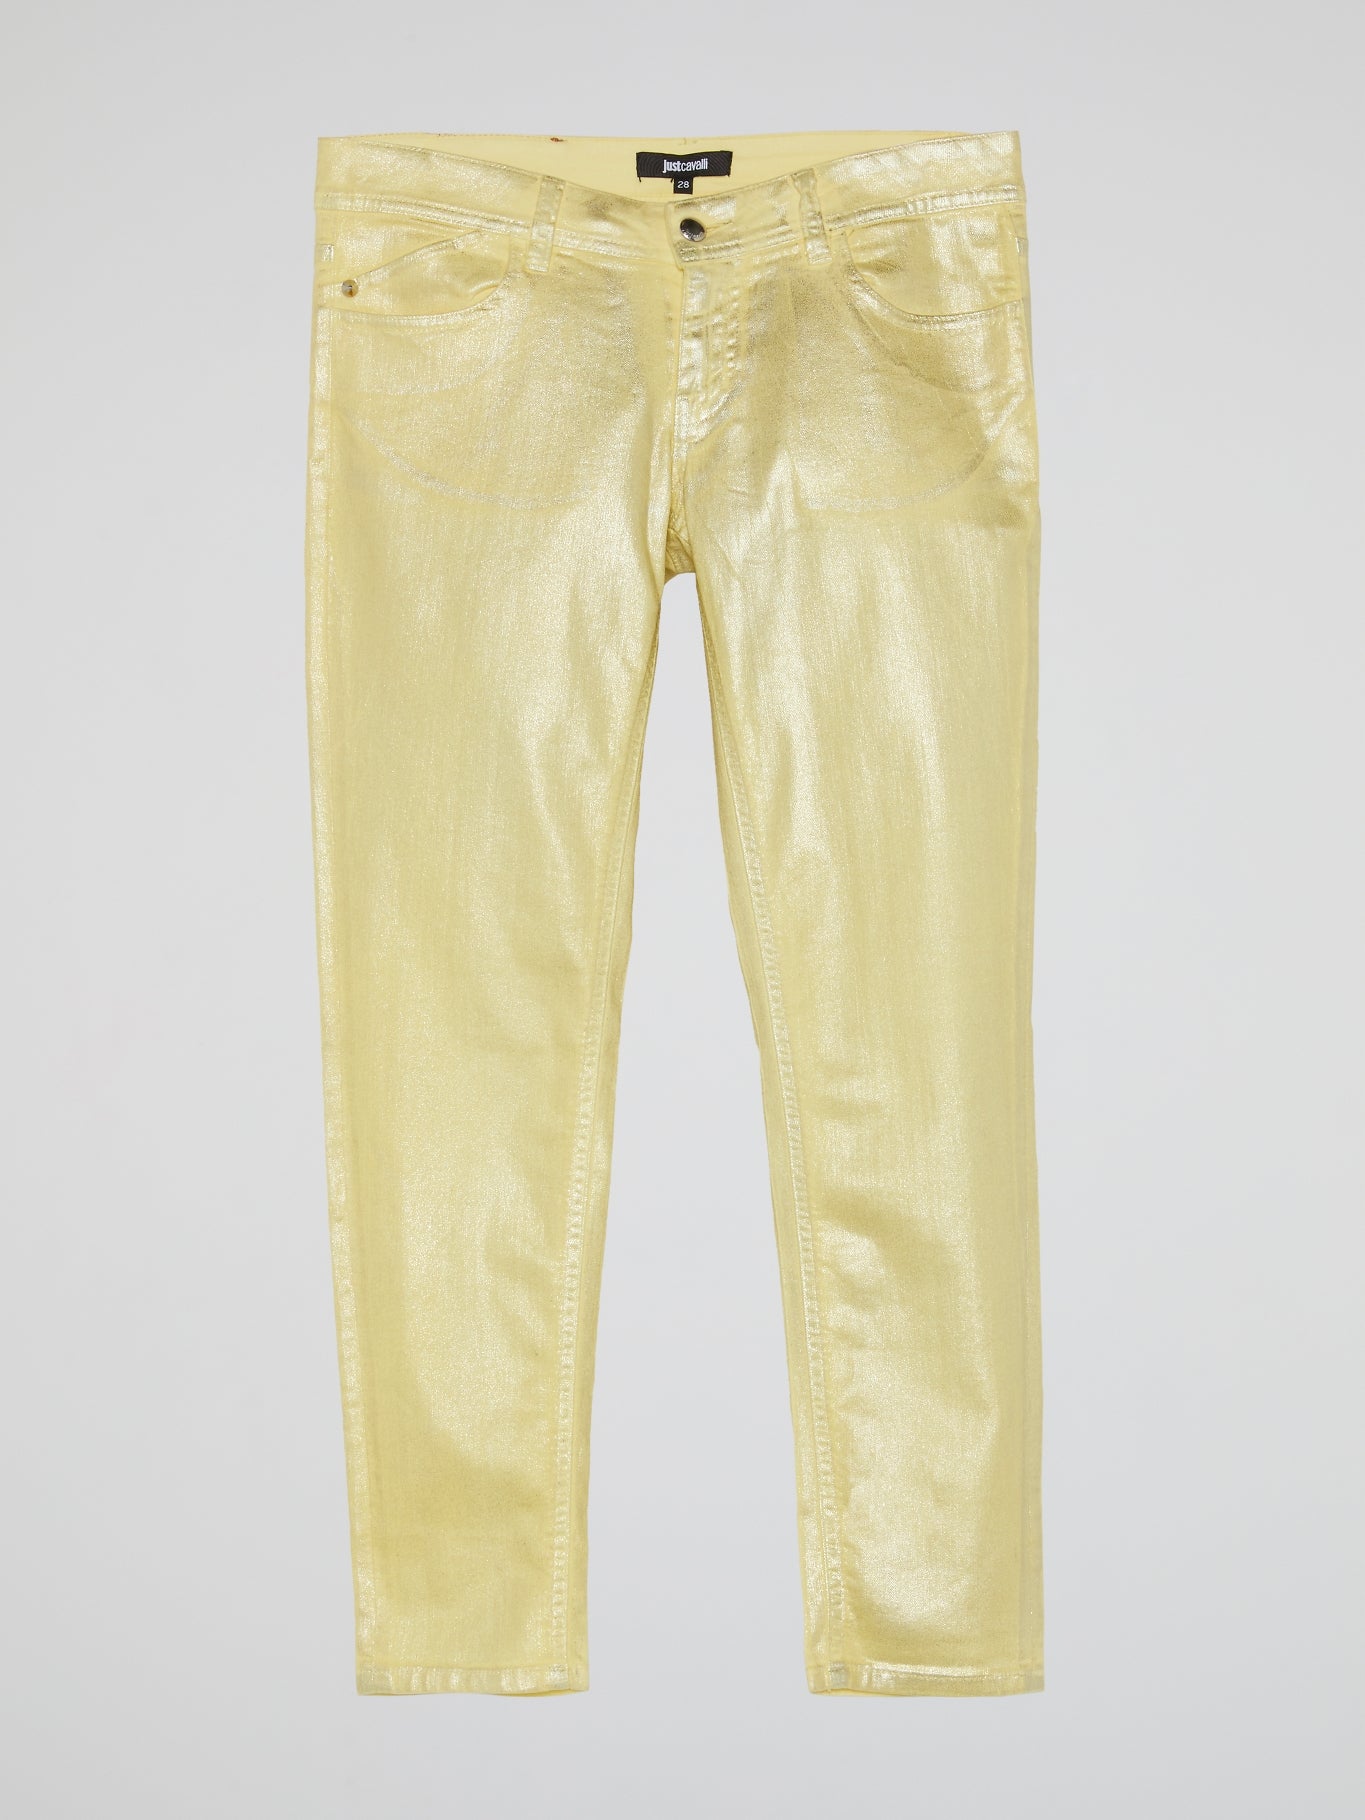 Yellow Glittered Pants